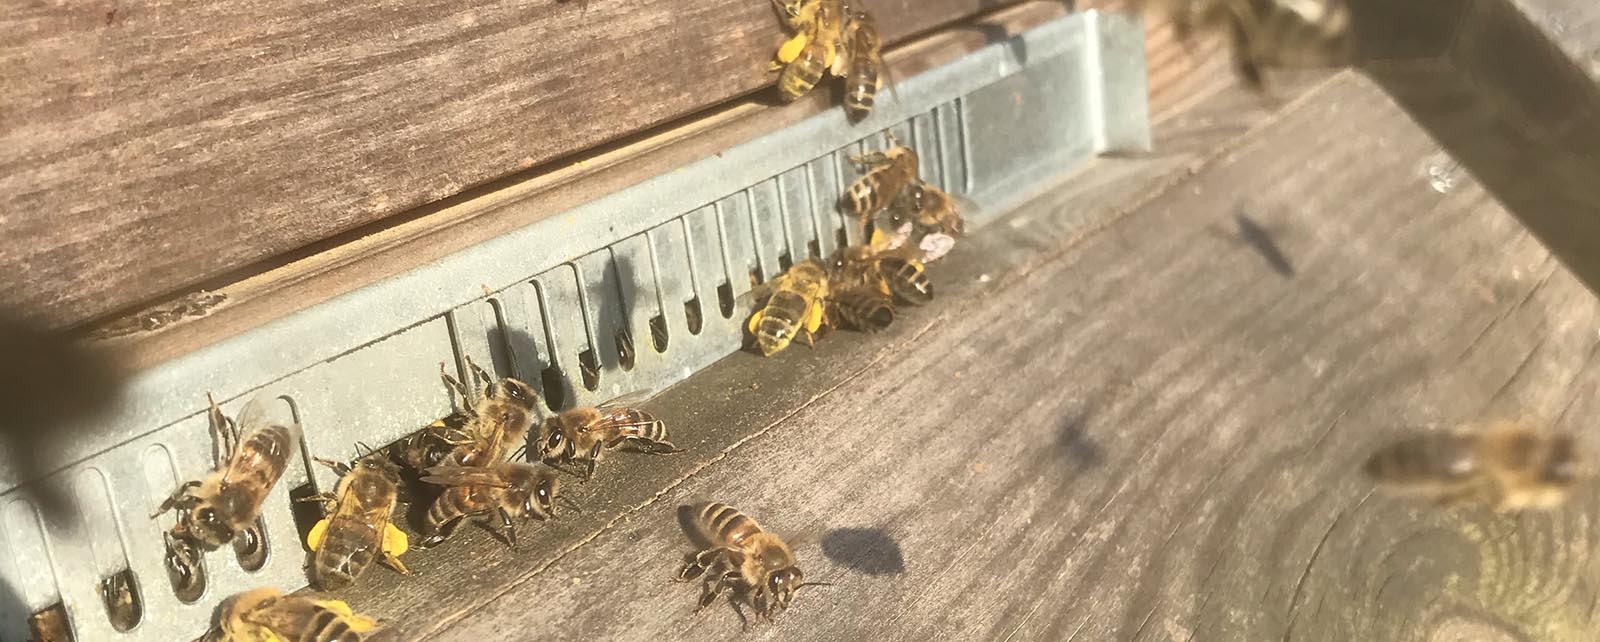 stuifmeel-bijen